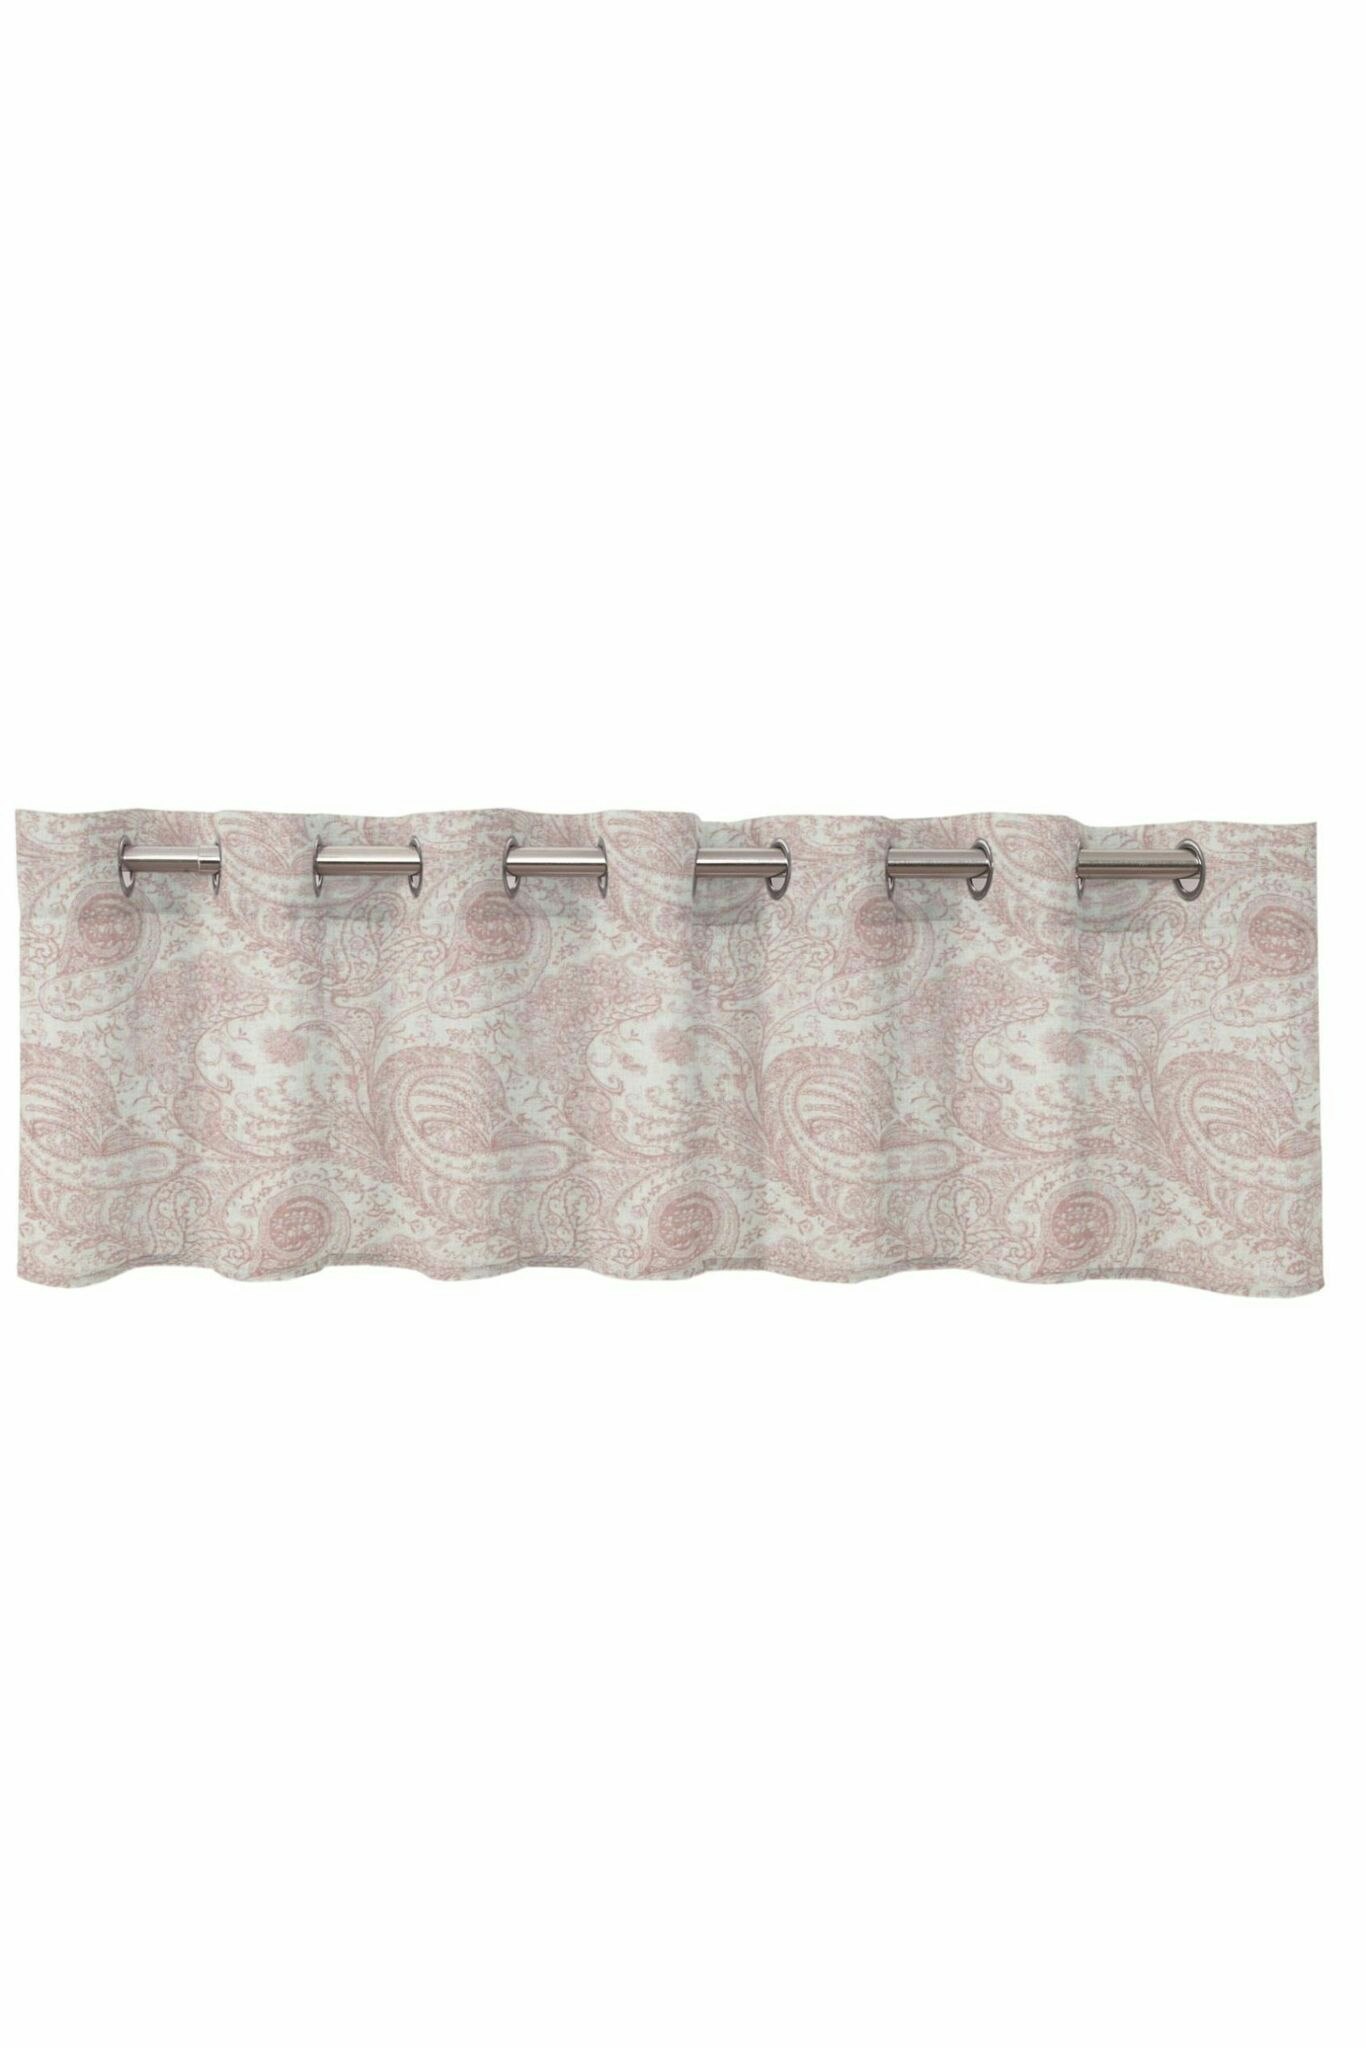 Andria en vit och rosa färdigsydd gardinkappa med öljetter från Redlunds  textil, mått 250 x 50 cm. - Roomoutlet.se - Textilier och inredning i  Karlstad